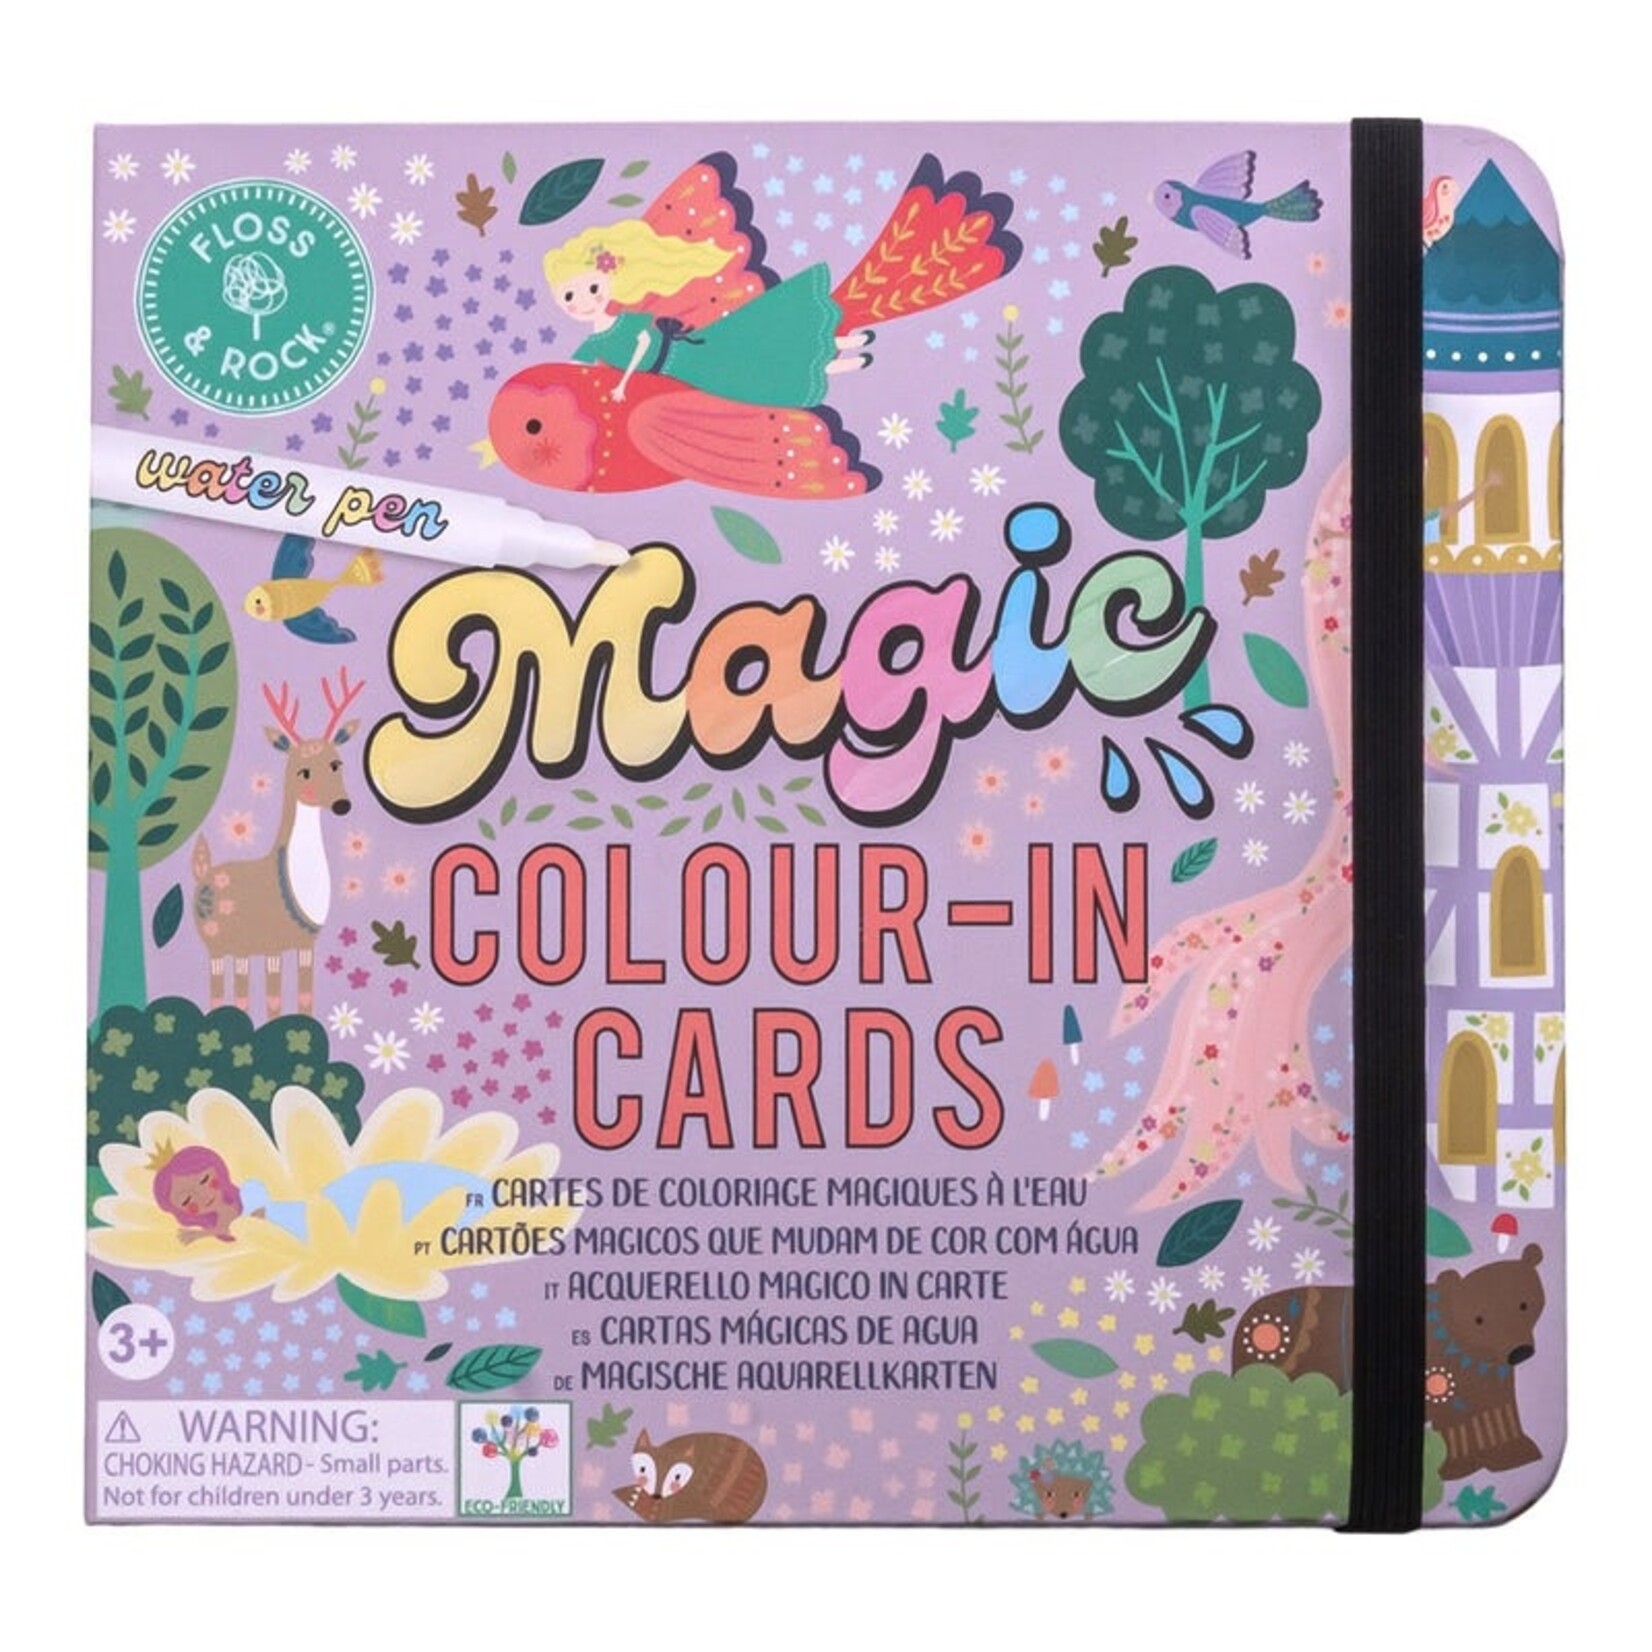 Floss & Rock Magic Color Cards